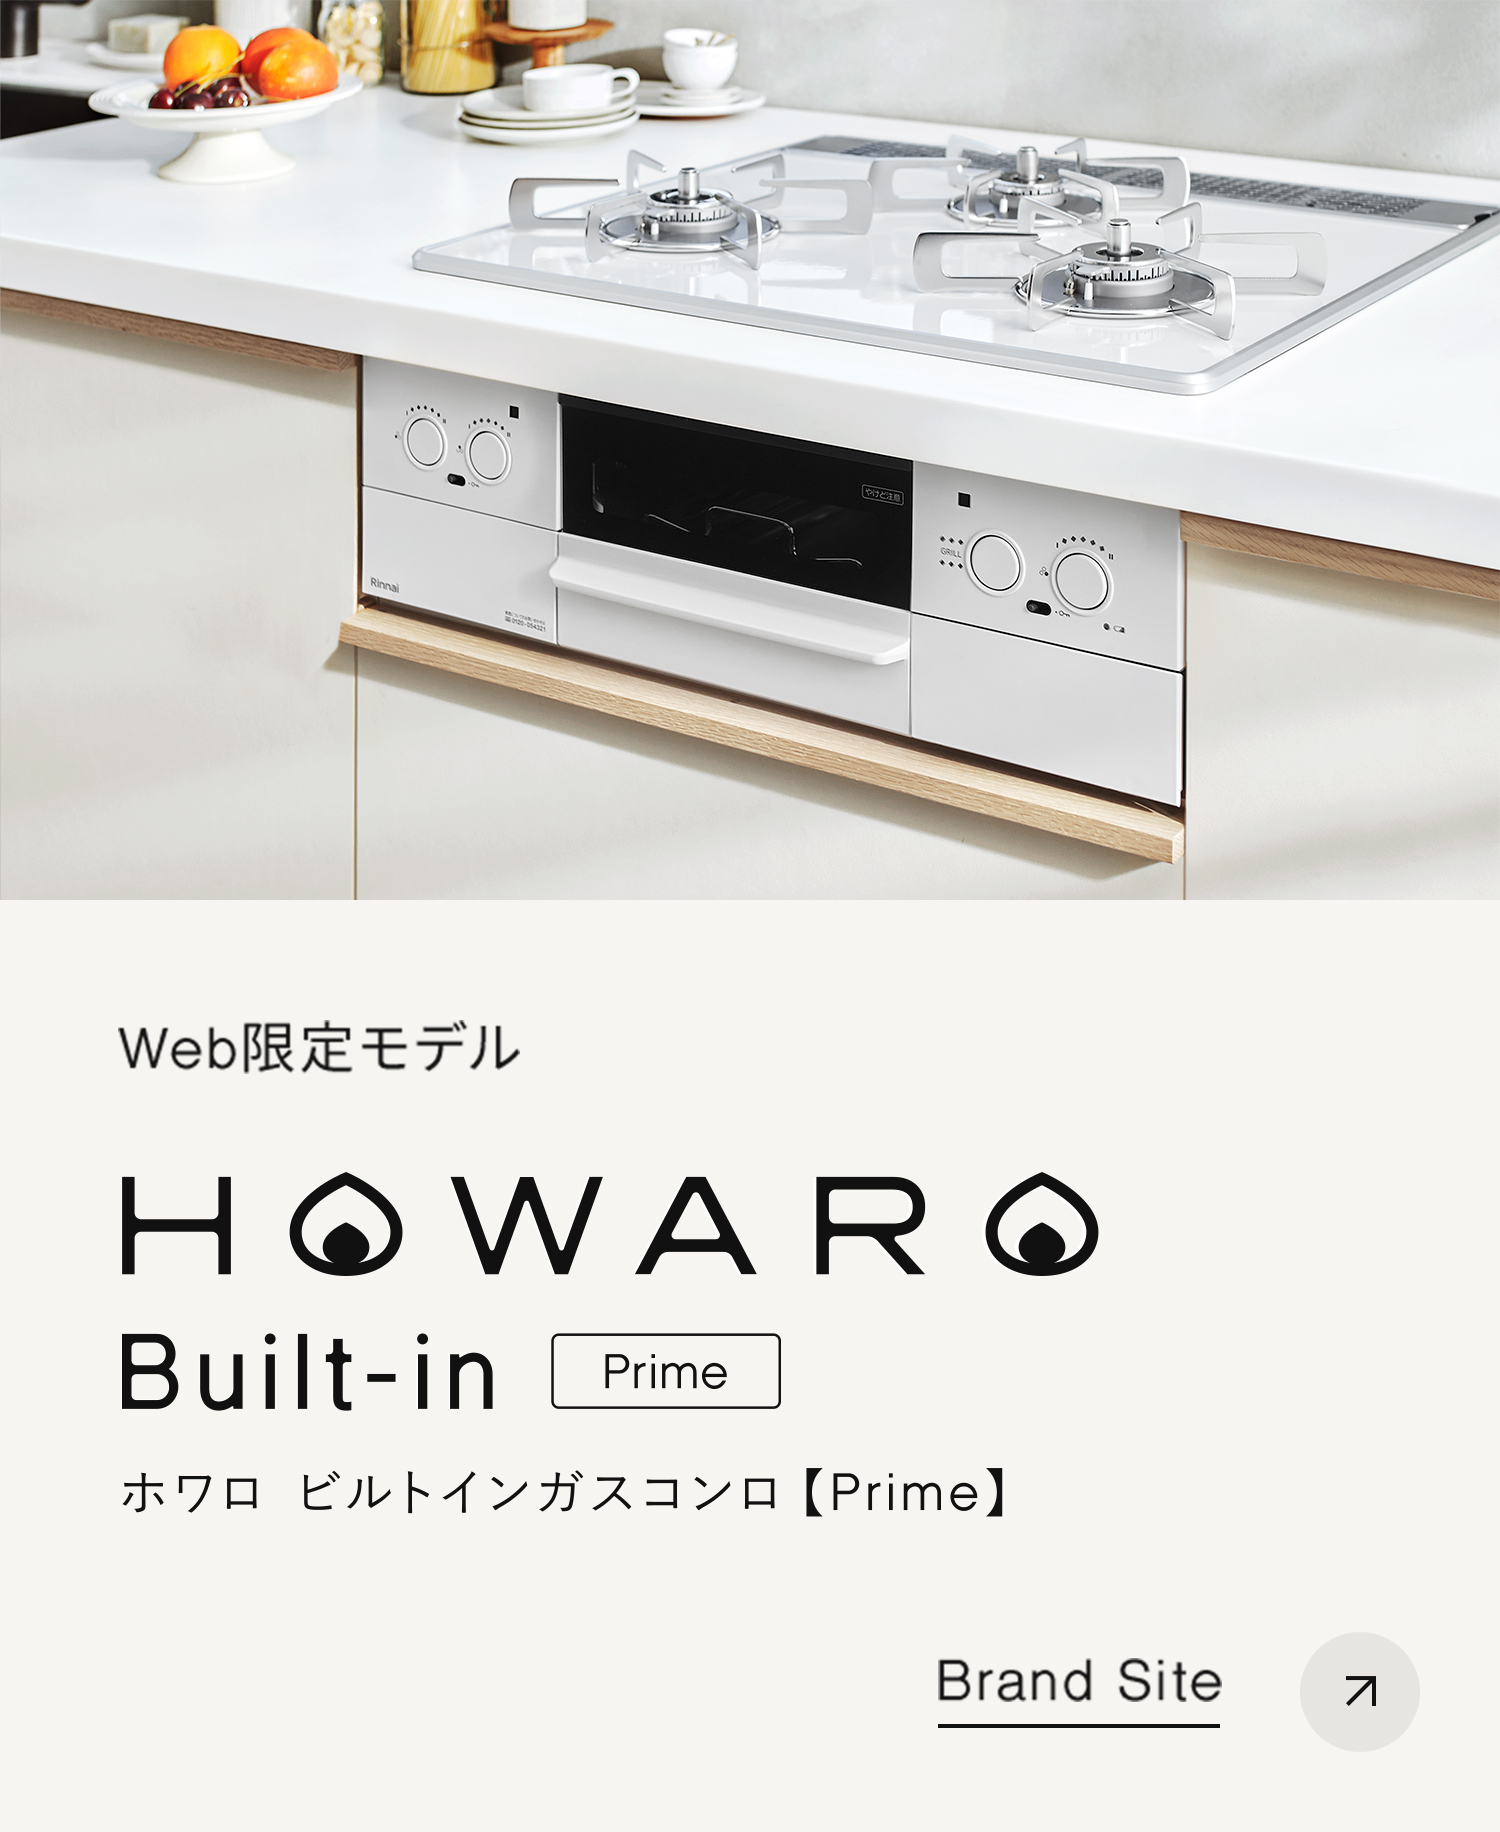 HOWARO Built-in Prime